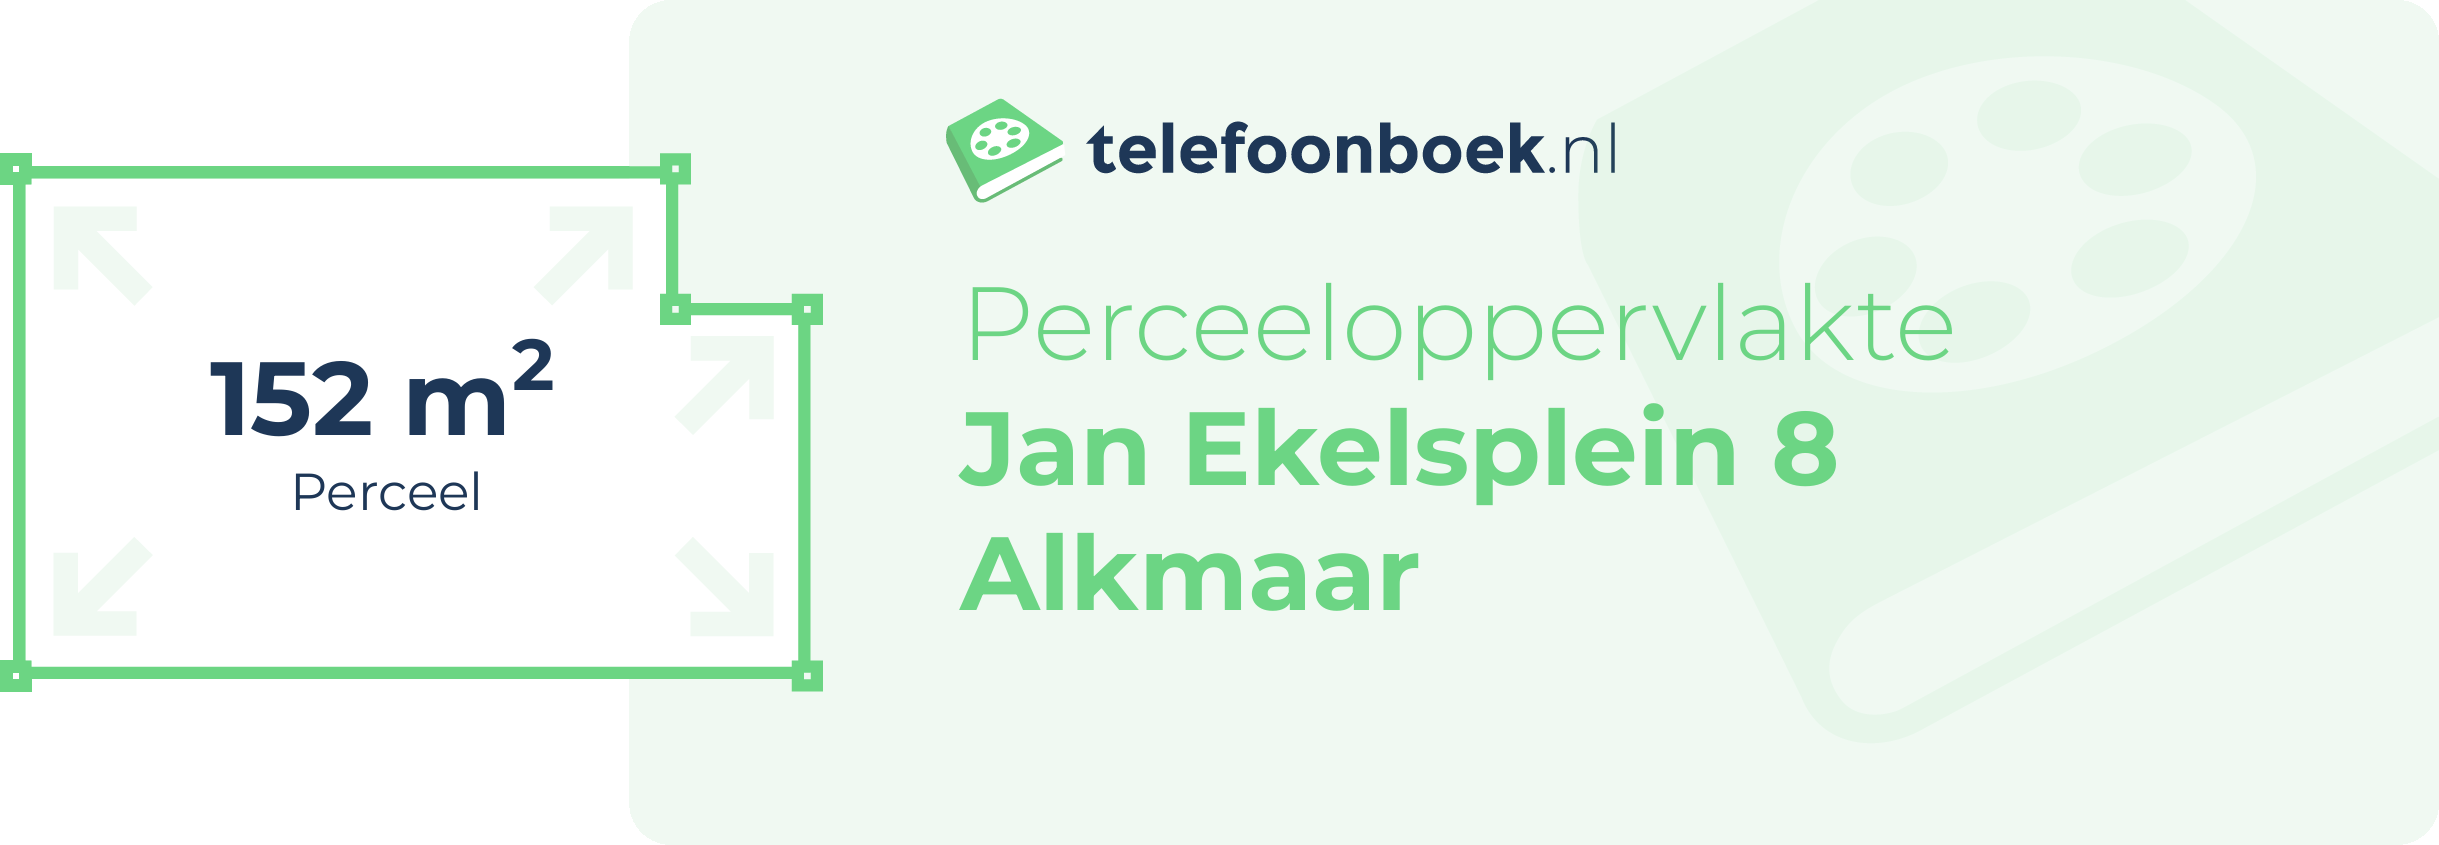 Perceeloppervlakte Jan Ekelsplein 8 Alkmaar